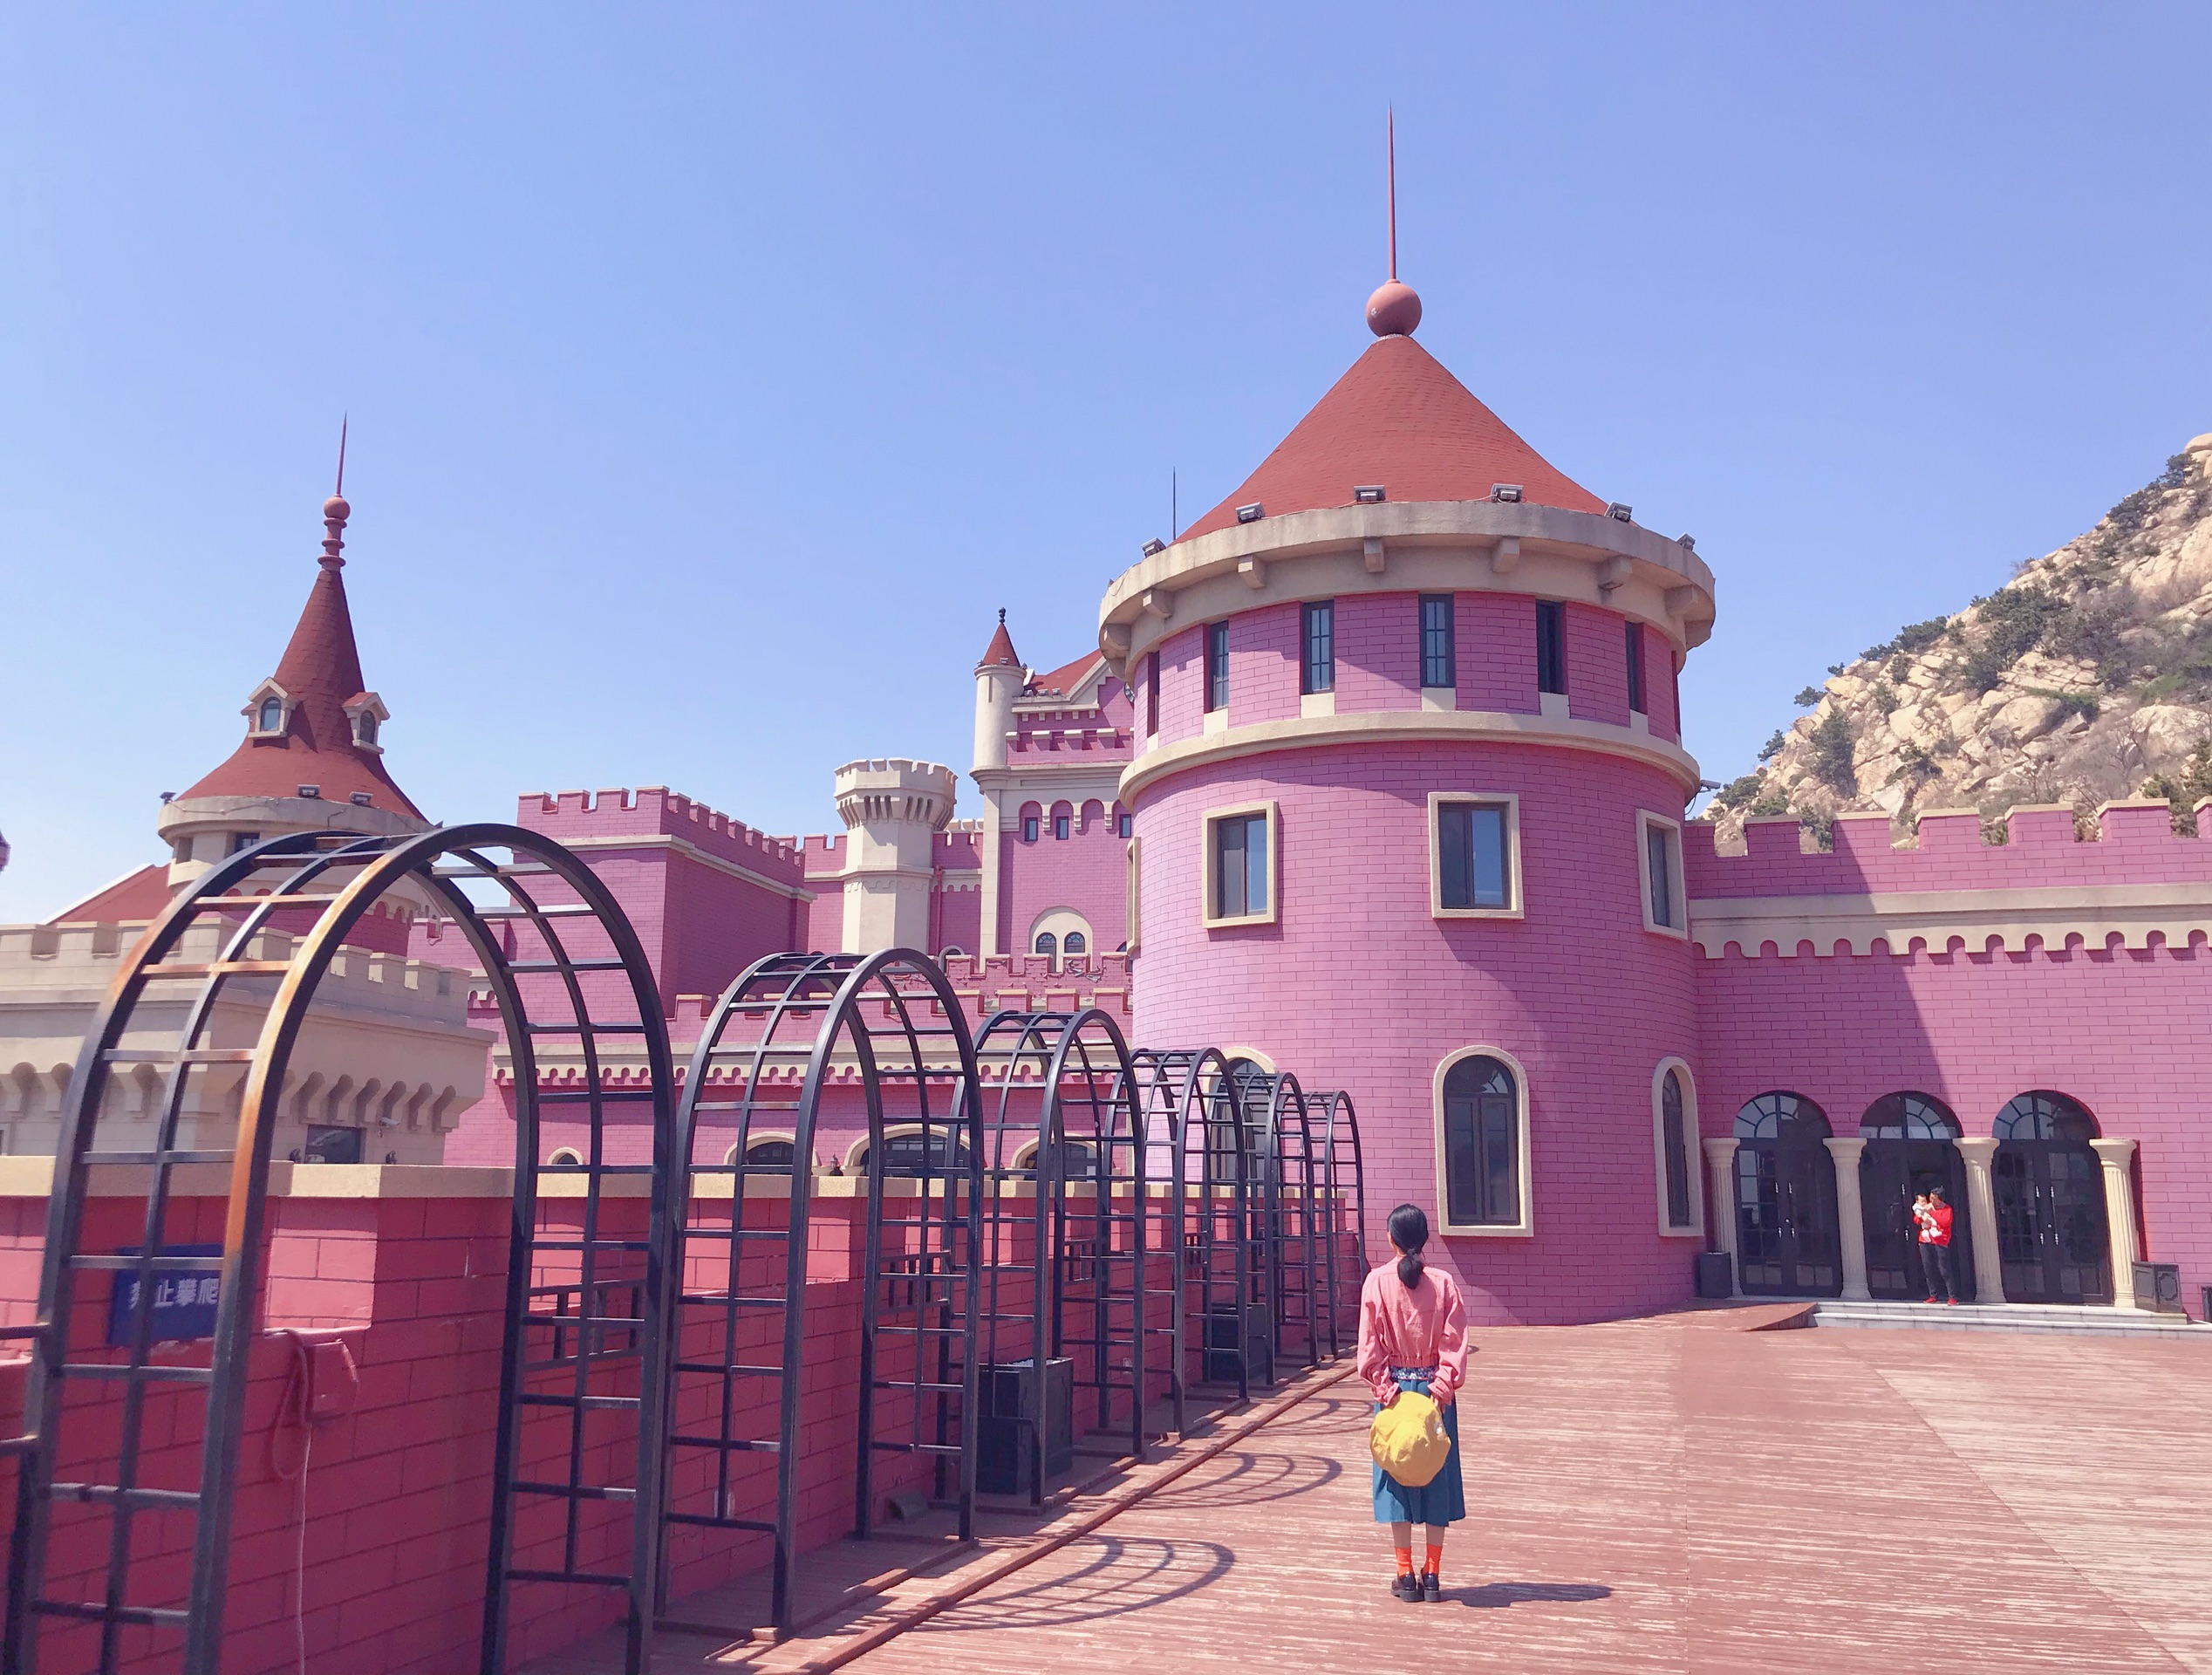 少女心炸裂的粉色城堡——青岛电影博物馆(影都)